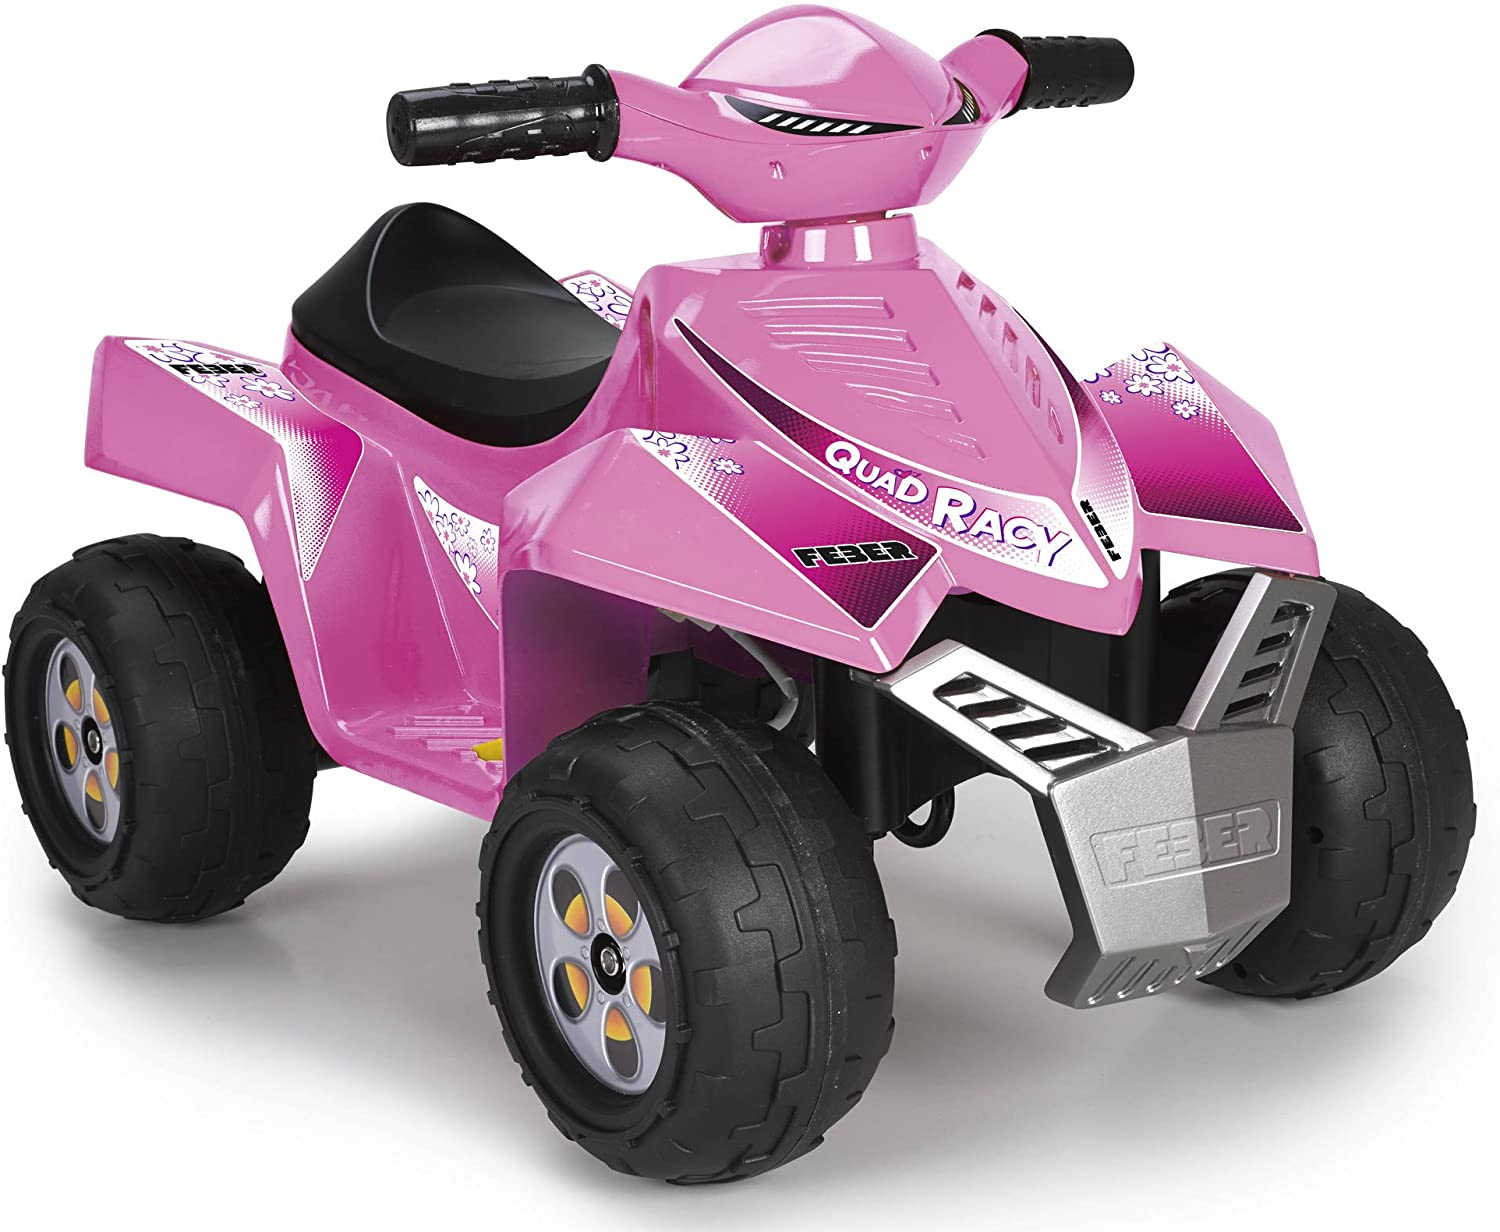 Quad Racy Pink rosa 6v - 1 a 3 años - Feber 11422, Coches eléctricos y  motos para niños a batería 12v con mando RC, quads infantiles, tractores  infantiles, camiones para niños, realizamos envíos a domicilio.